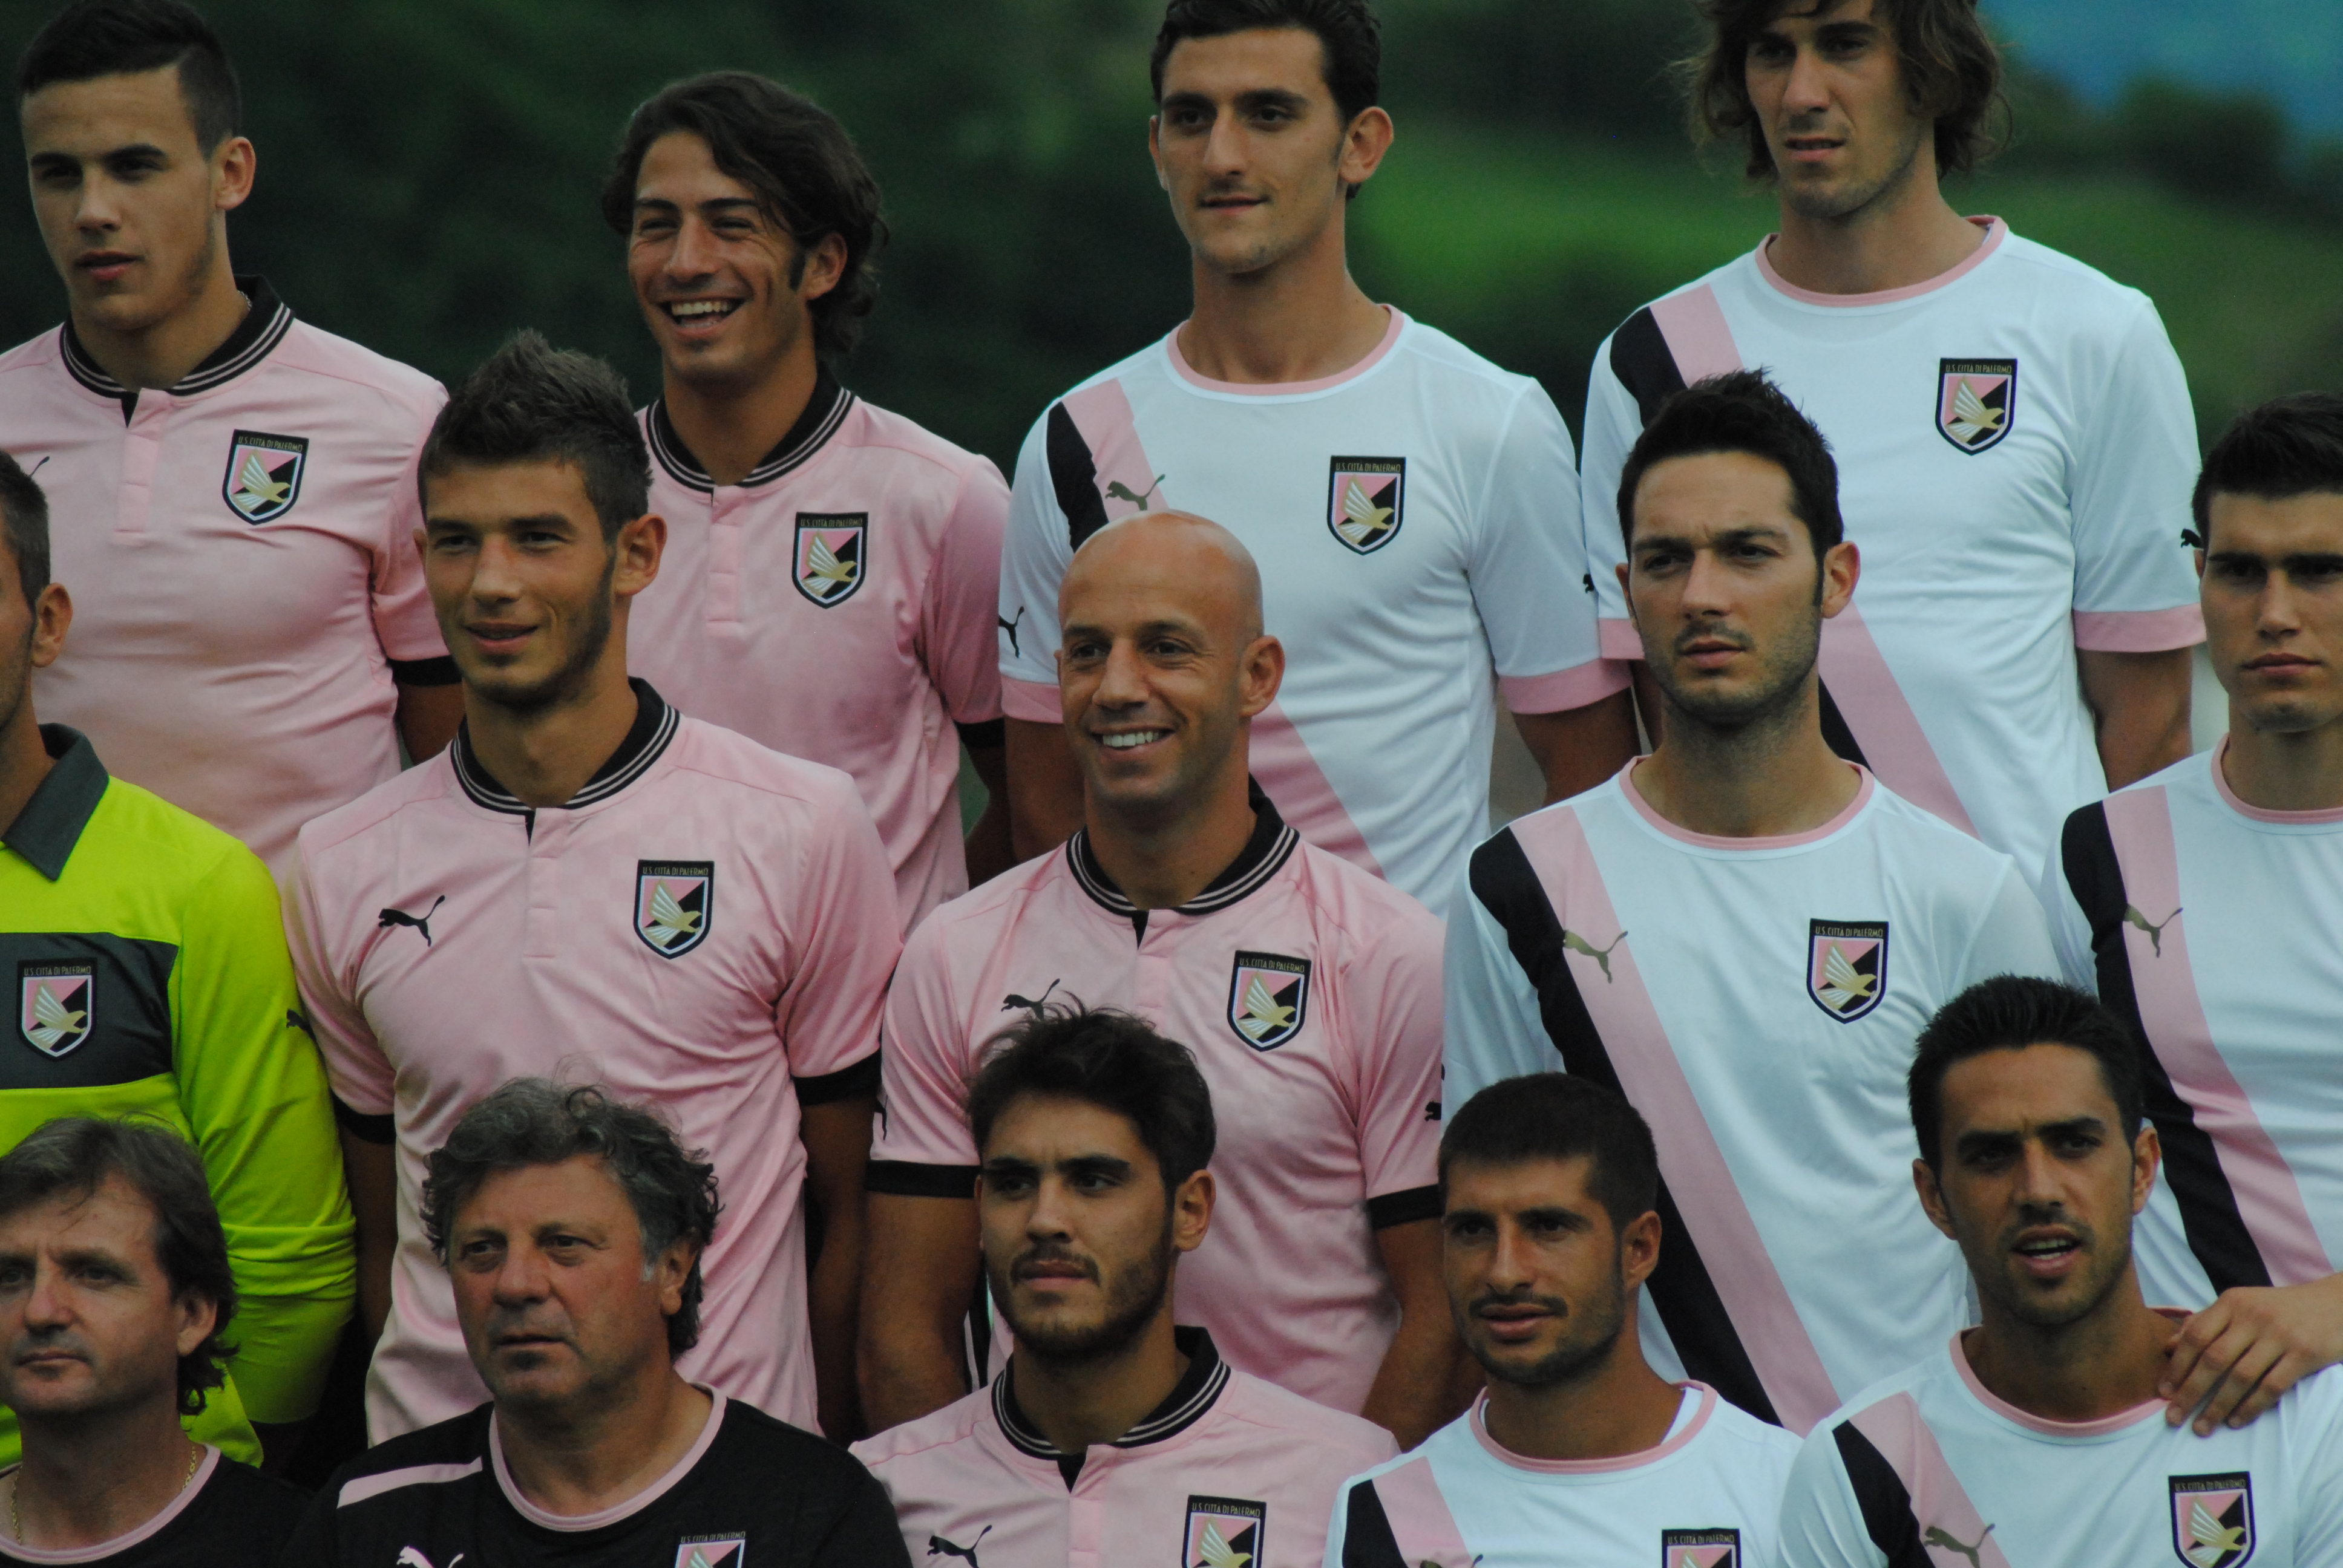 Anche quest'anno siamo sponsor di maglia del Palermo FC